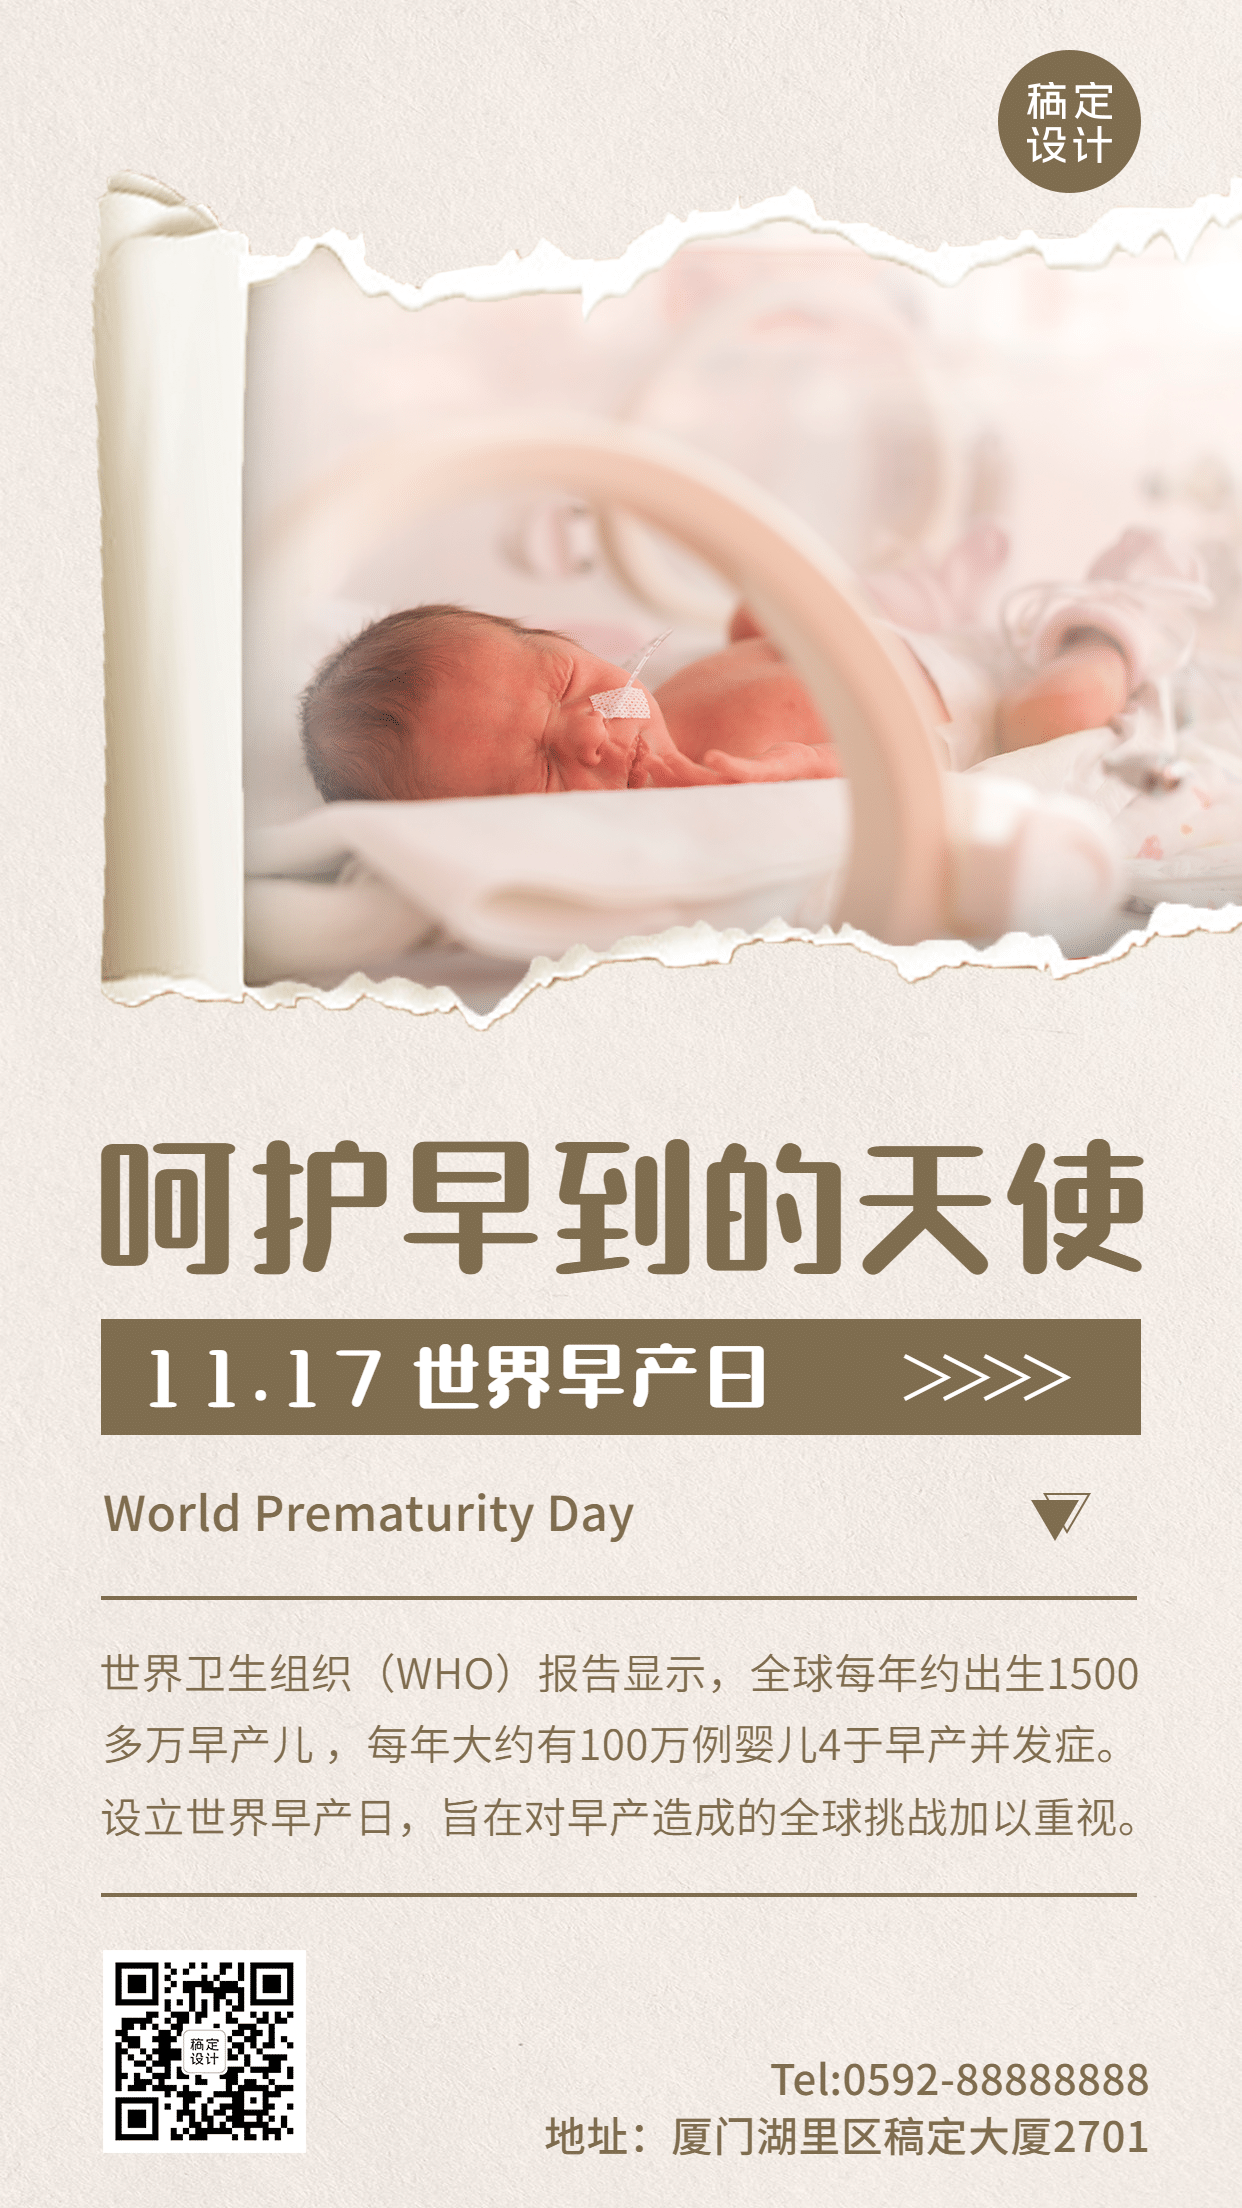 世界早产日关注早产儿健康节日科普实景手机海报预览效果